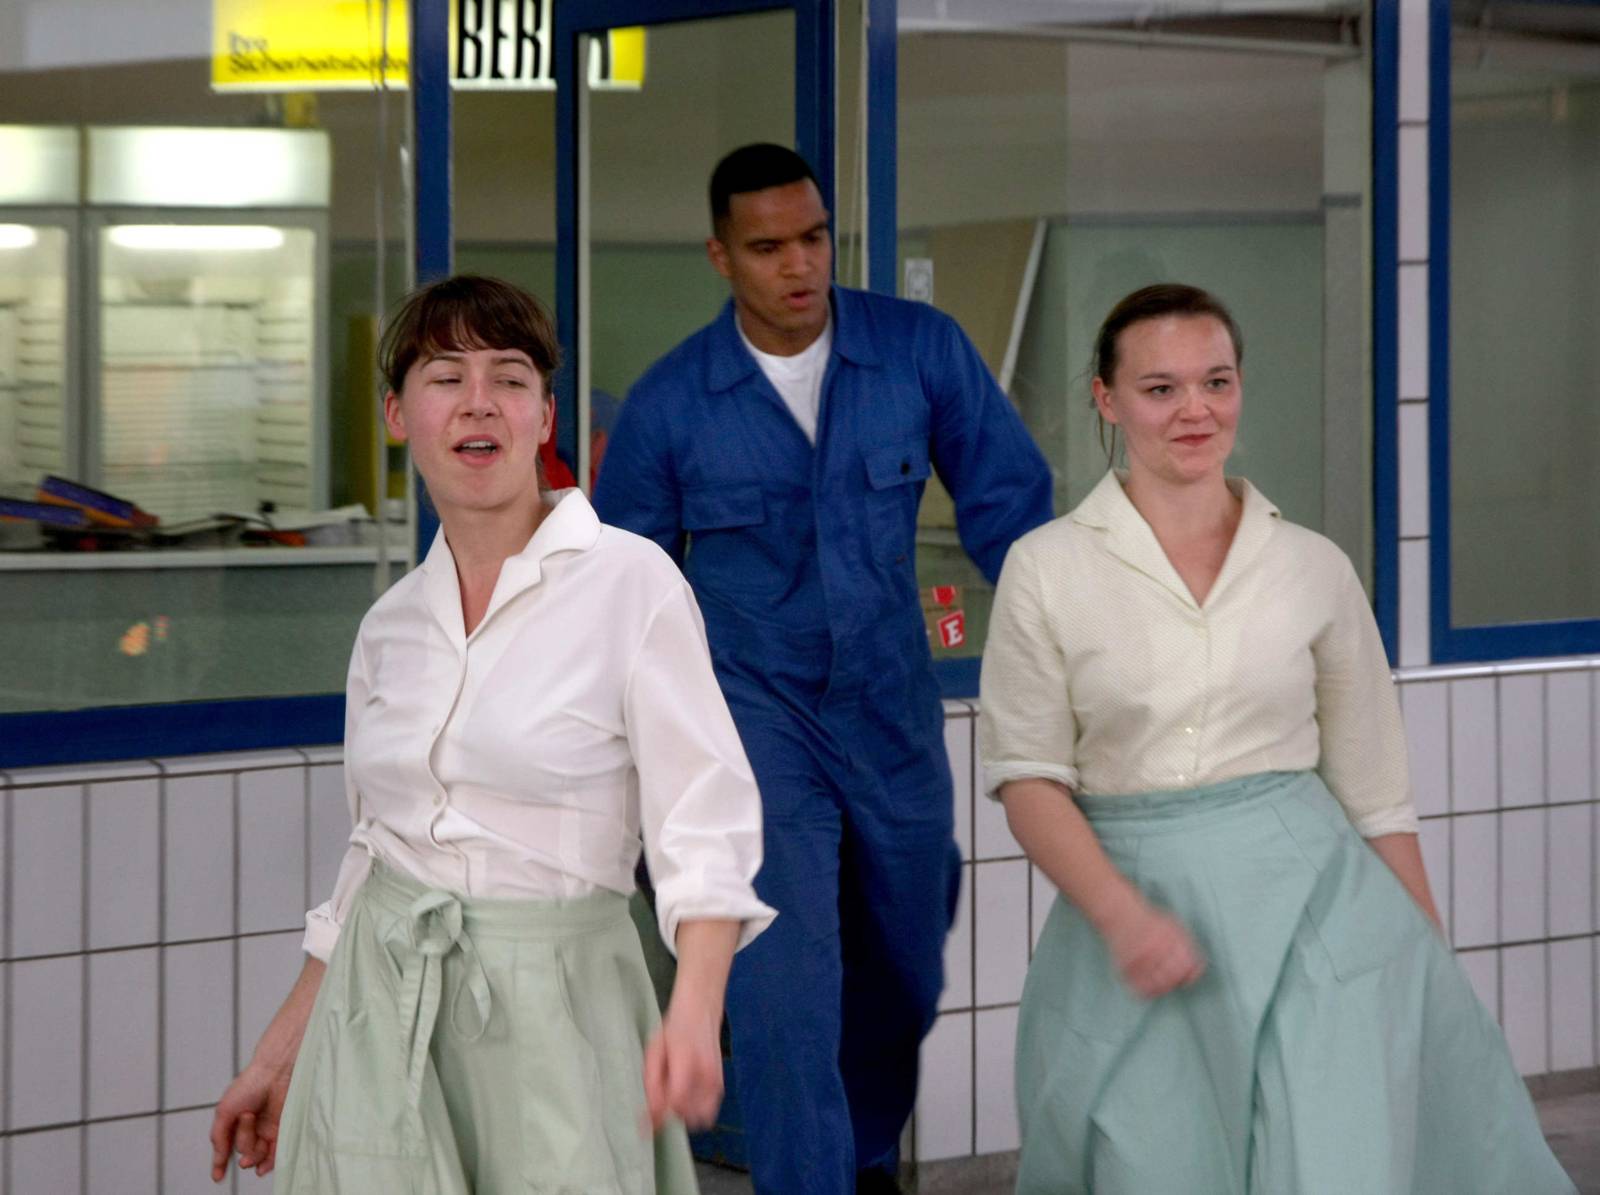 Szene aus einem Stück: Zwei Frauen in türkisen Petticoats kommen aus einer Tankstelle, ihnen folgt ein Mann im Blaumann.